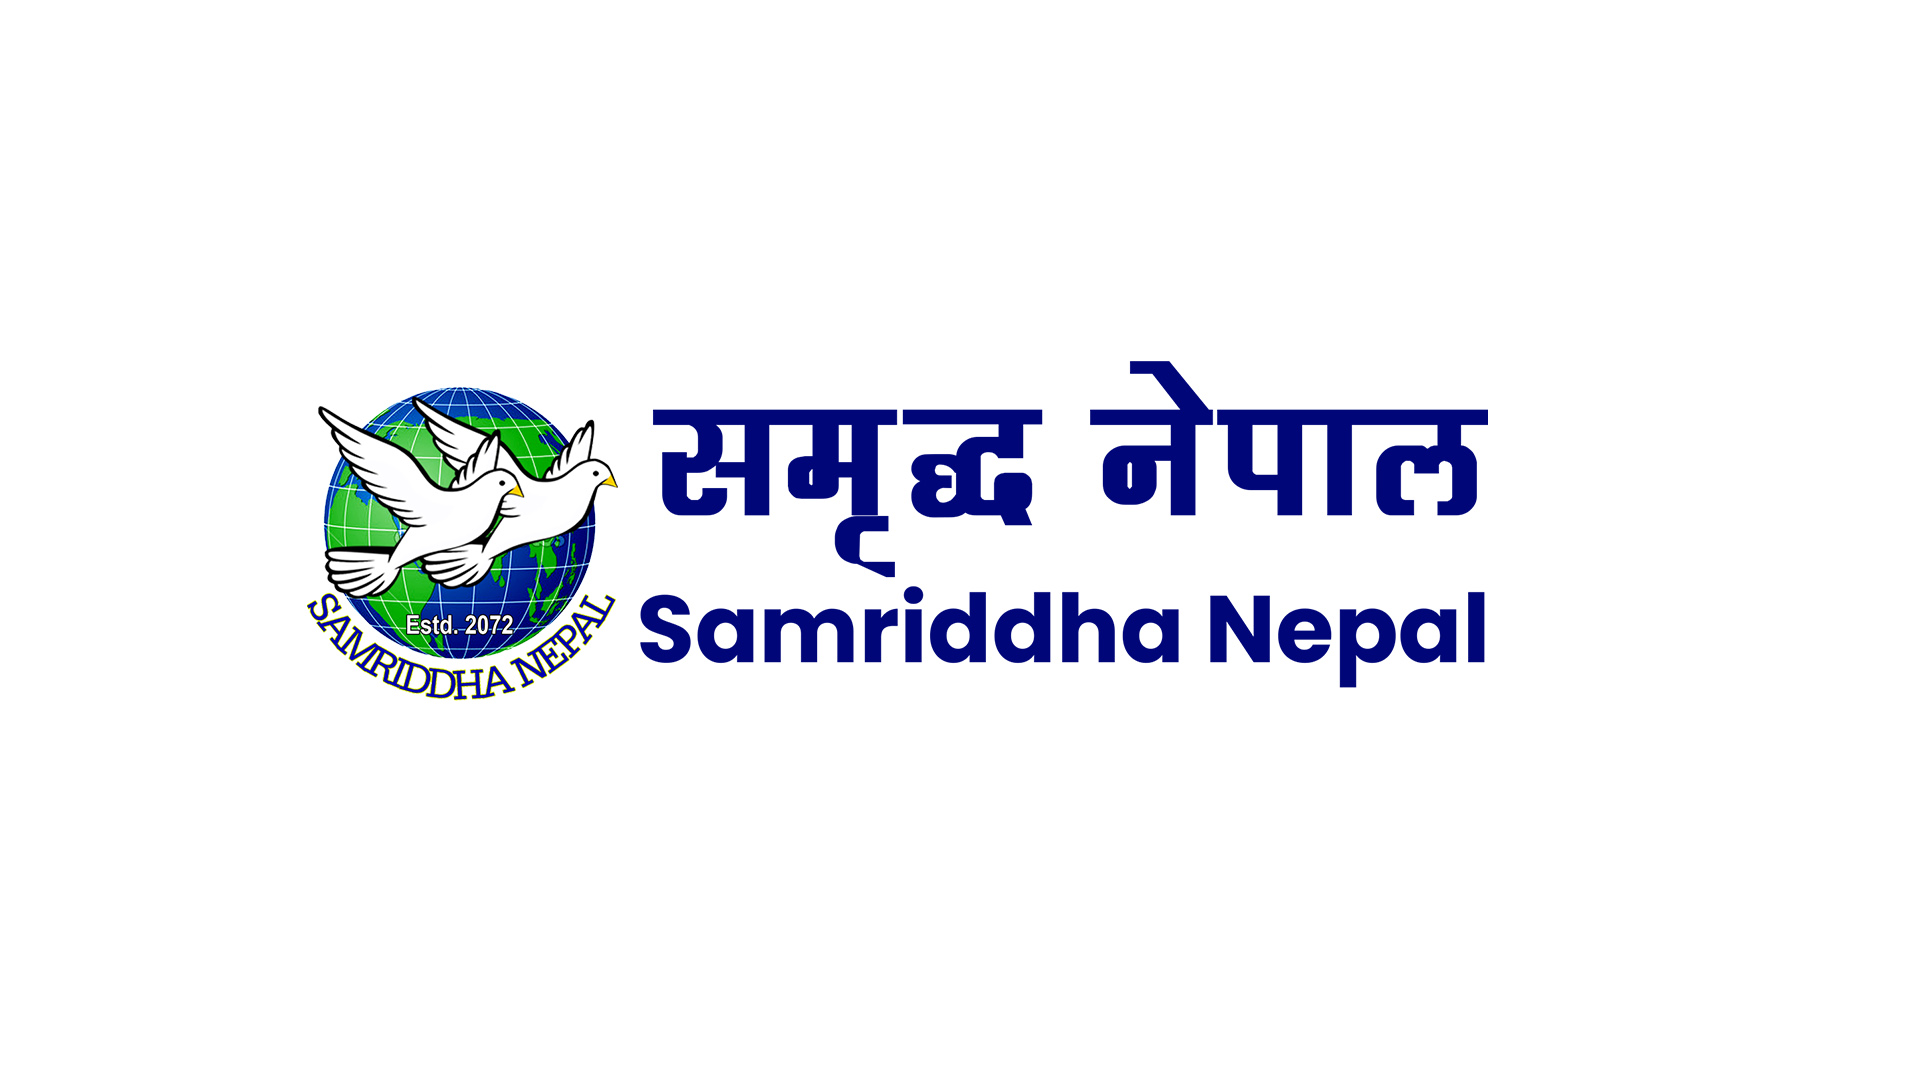 Samriddha Nepal